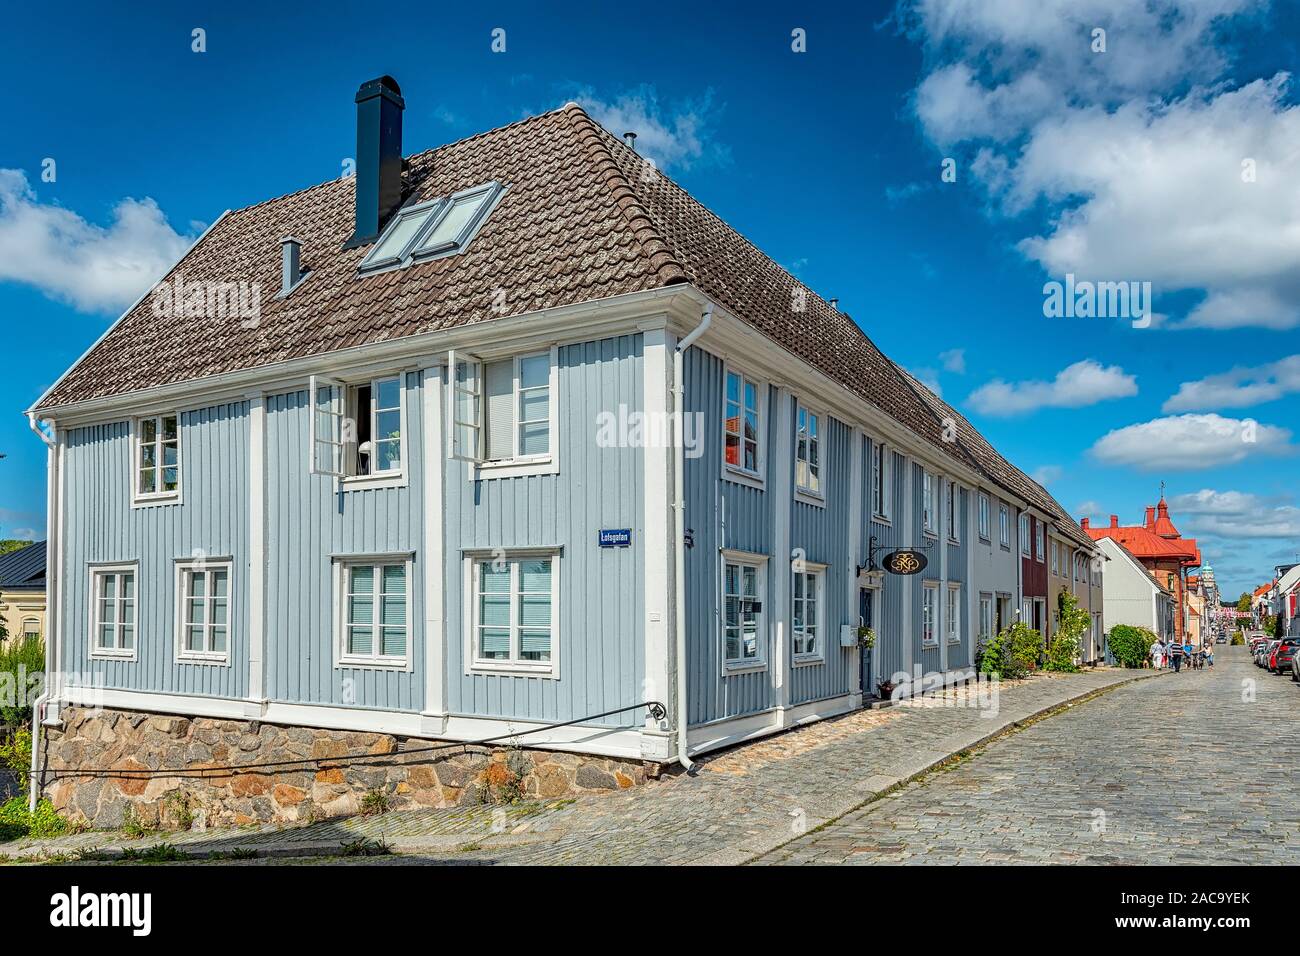 KARLSHAMN, Schweden - 24. AUGUST 2019: Eine typische Straße Blick von der Schwedischen Karlshamn. Stockfoto